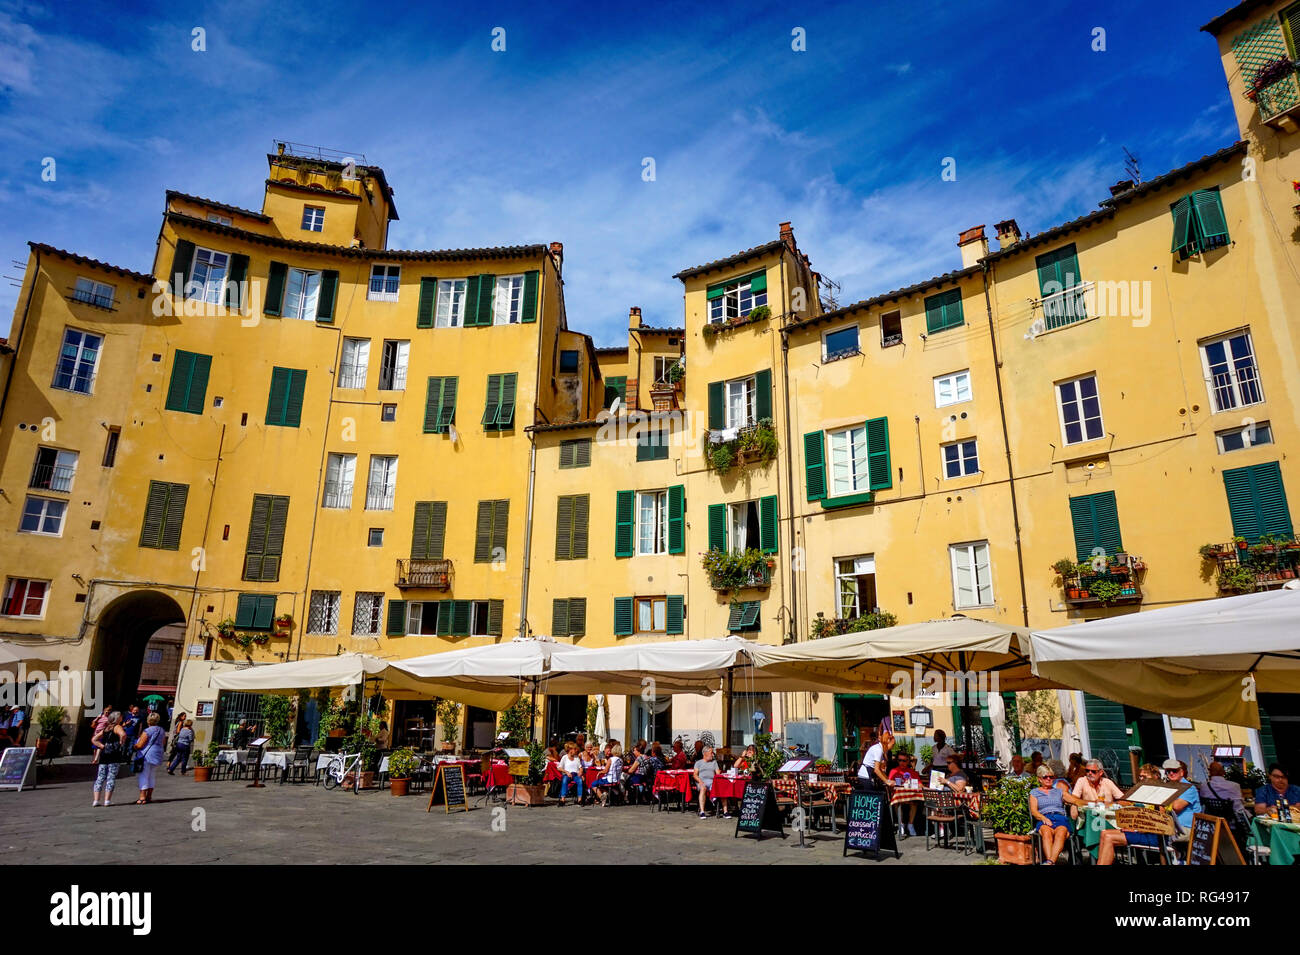 Lucca, Toskana/Italien - 09.15.2017: Menschen mit Mittagessen in den Restaurants der Amphitheater Platz mit sehr schönen historischen Atmosphäre Stockfoto